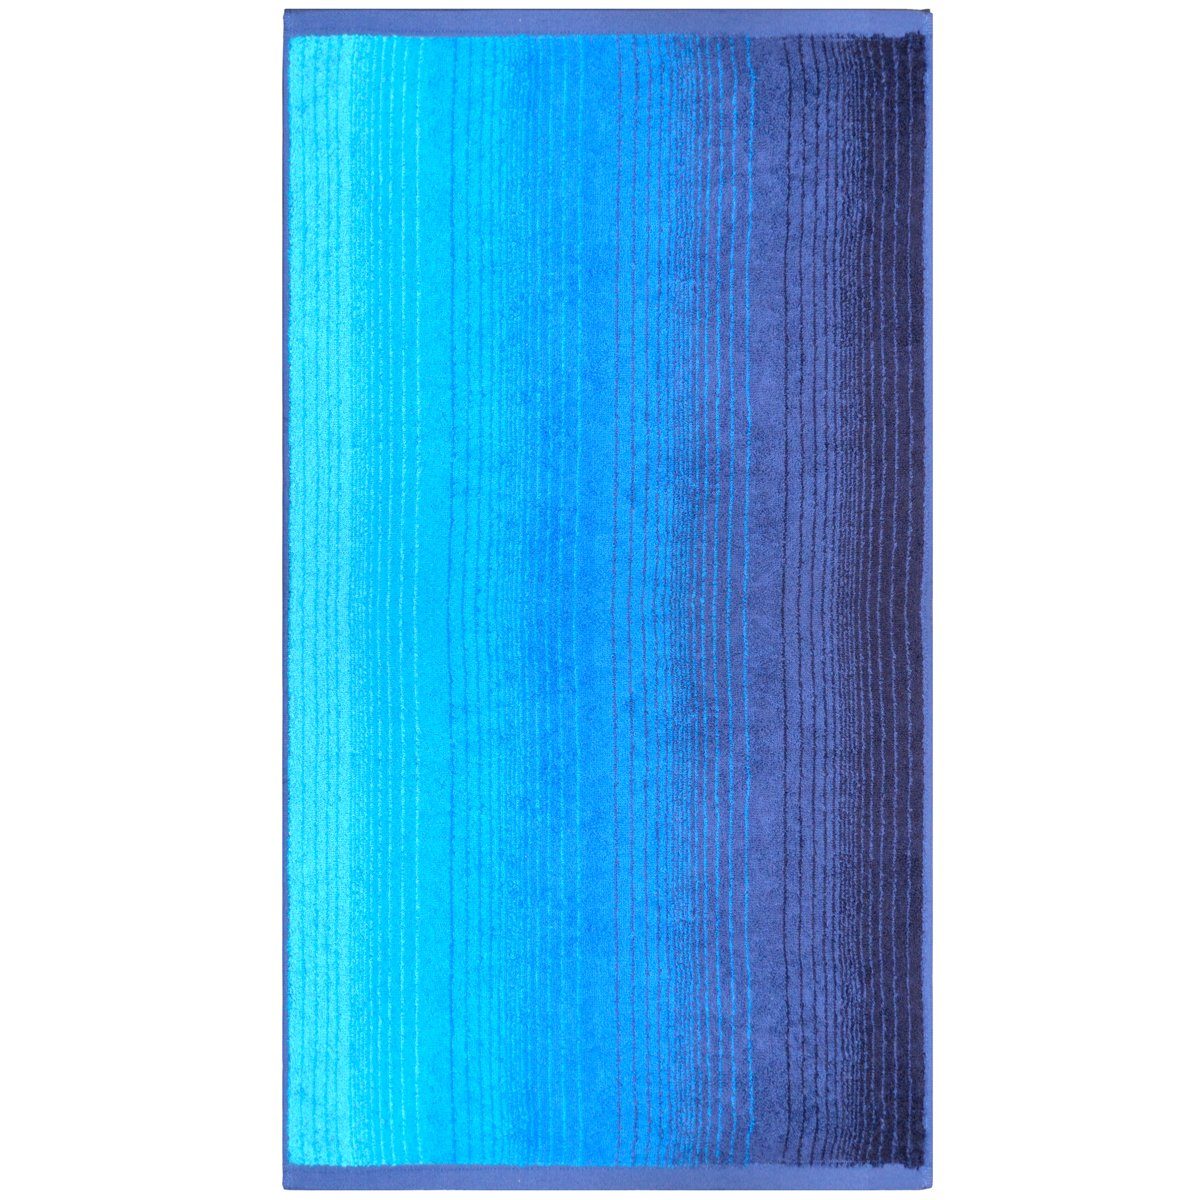 70 Duschtuch Dyckhoff 140 "Colori" Duschtuch Blau mit x Farbverlauf Dyckhoff